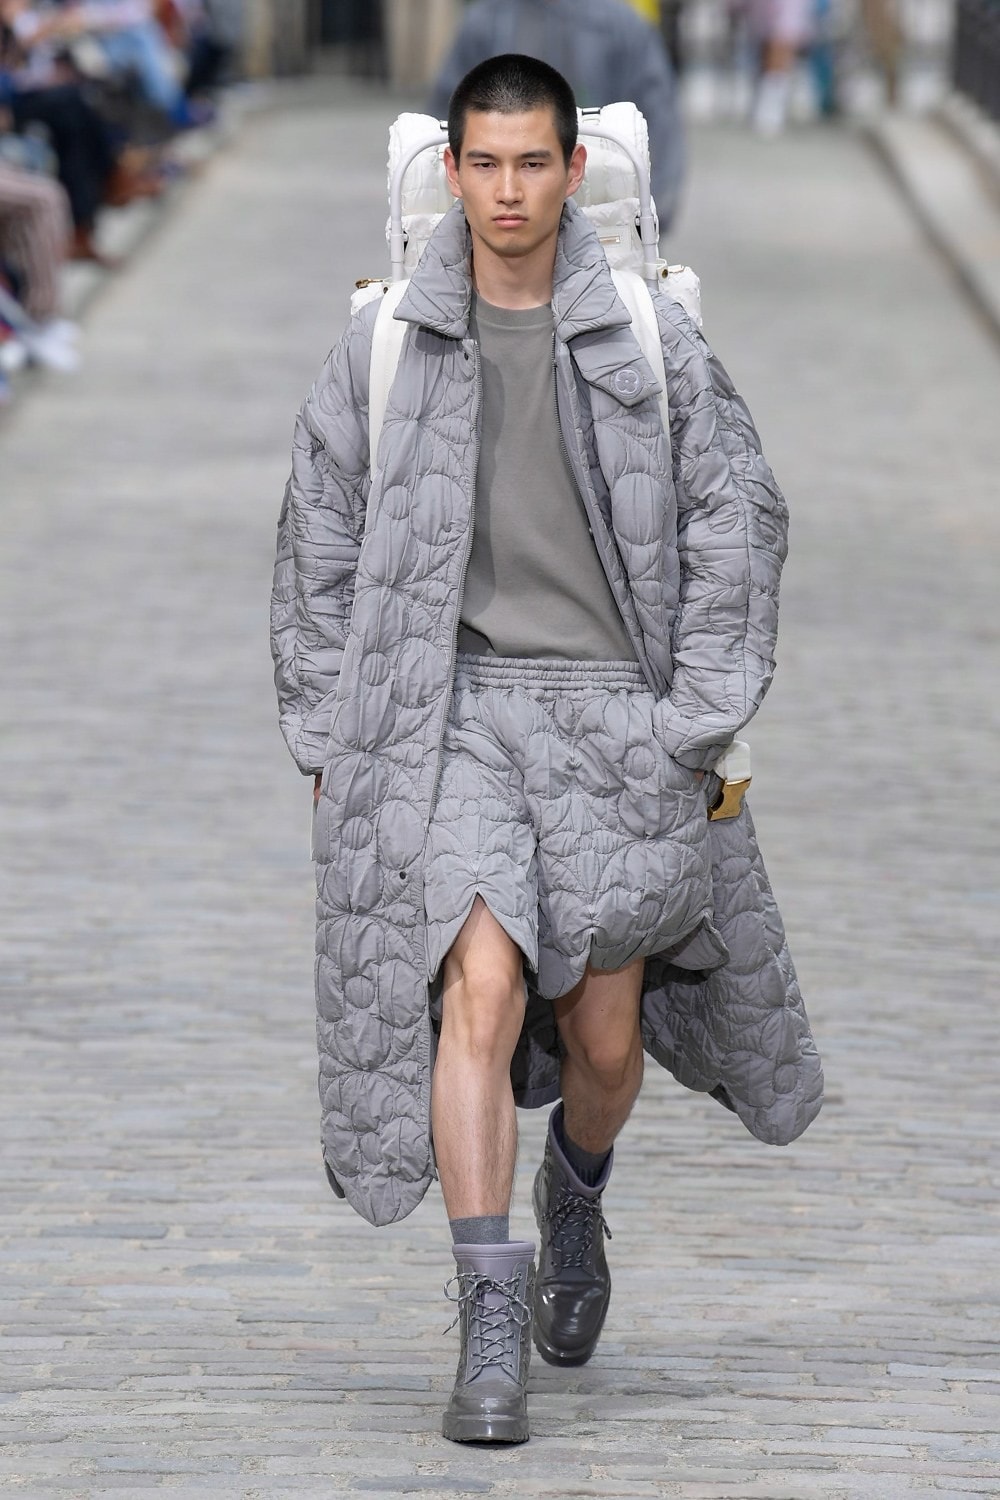 2019 Louis Vuitton Monogram Leather Men's Jacket Limited Edition